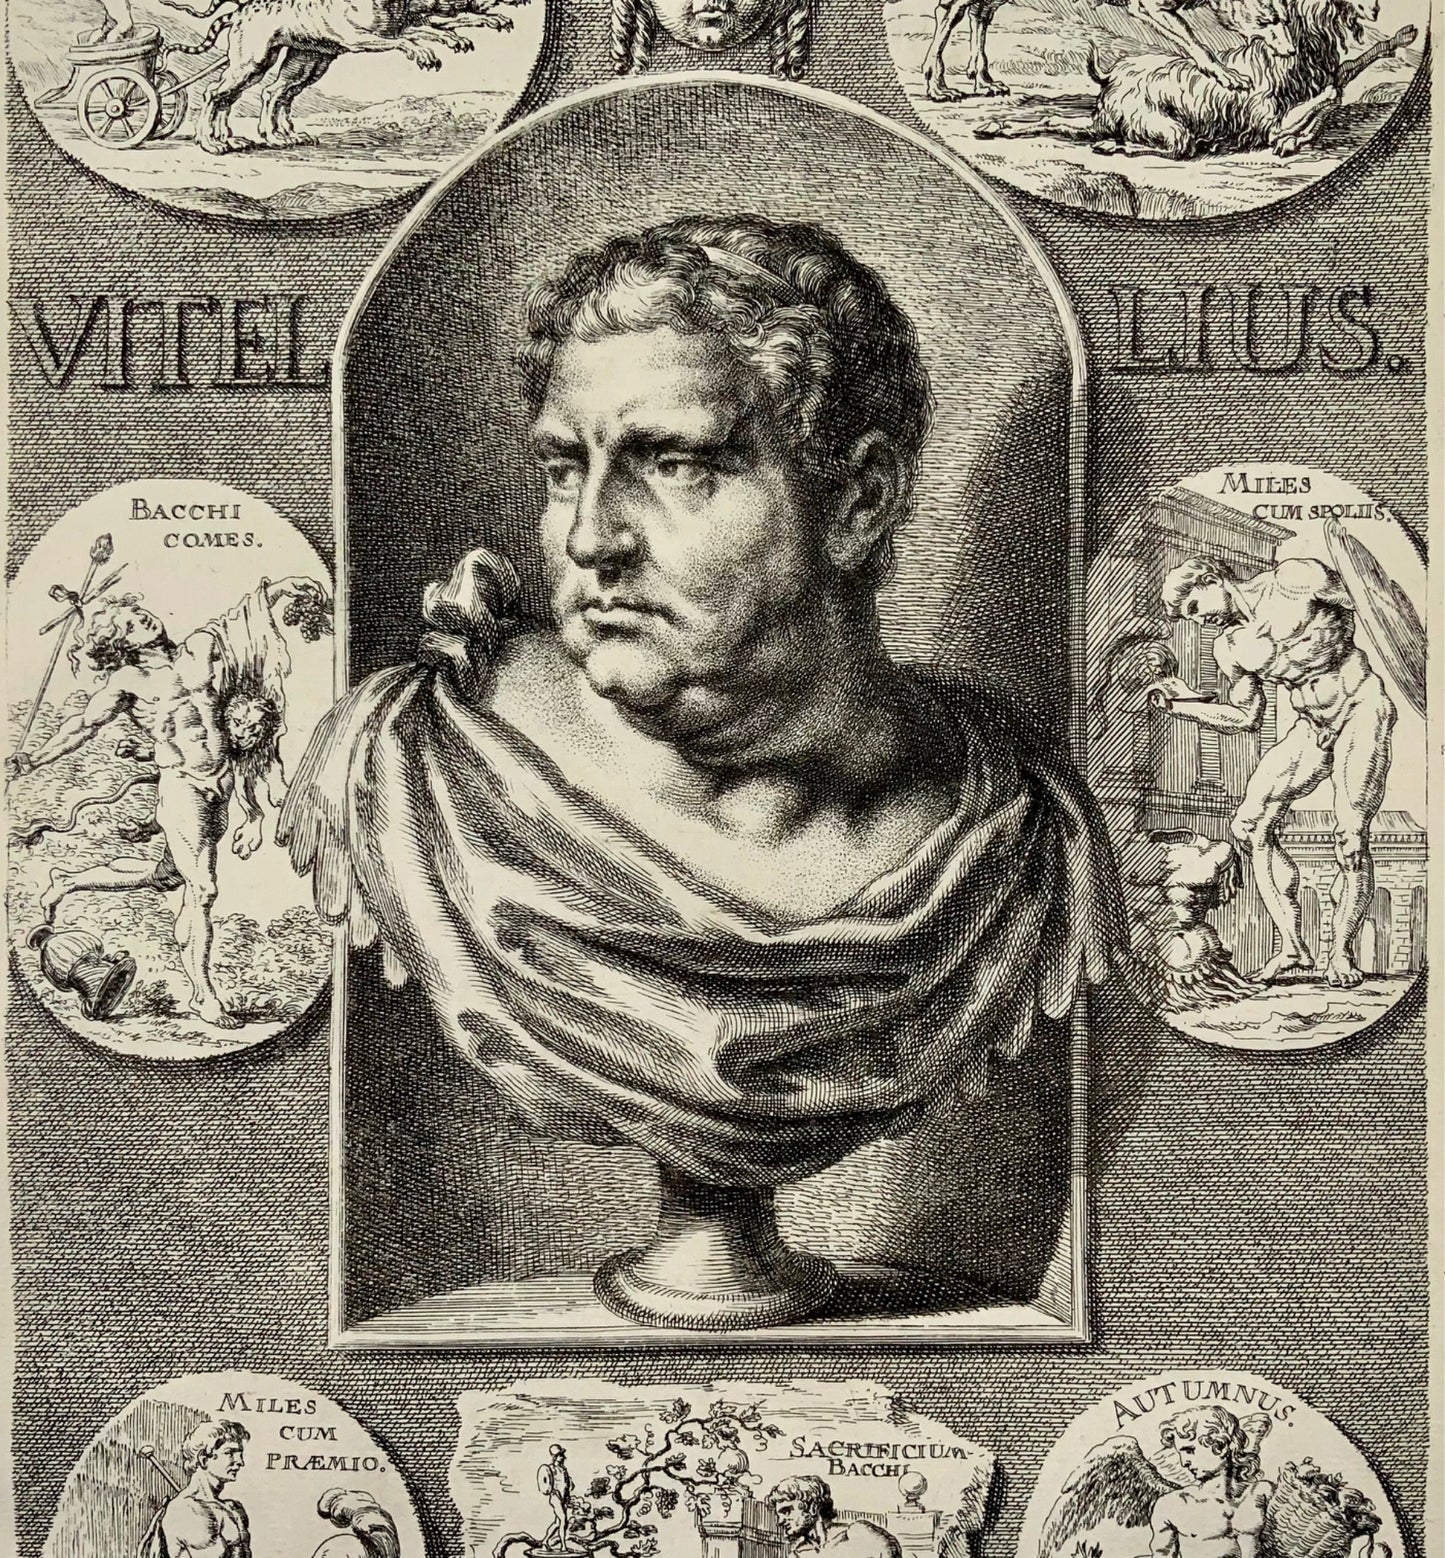 1676 EMPEREUR VITELLIUS GC Eimmart 1638-1705 d'après la gravure in-folio de Sandrart